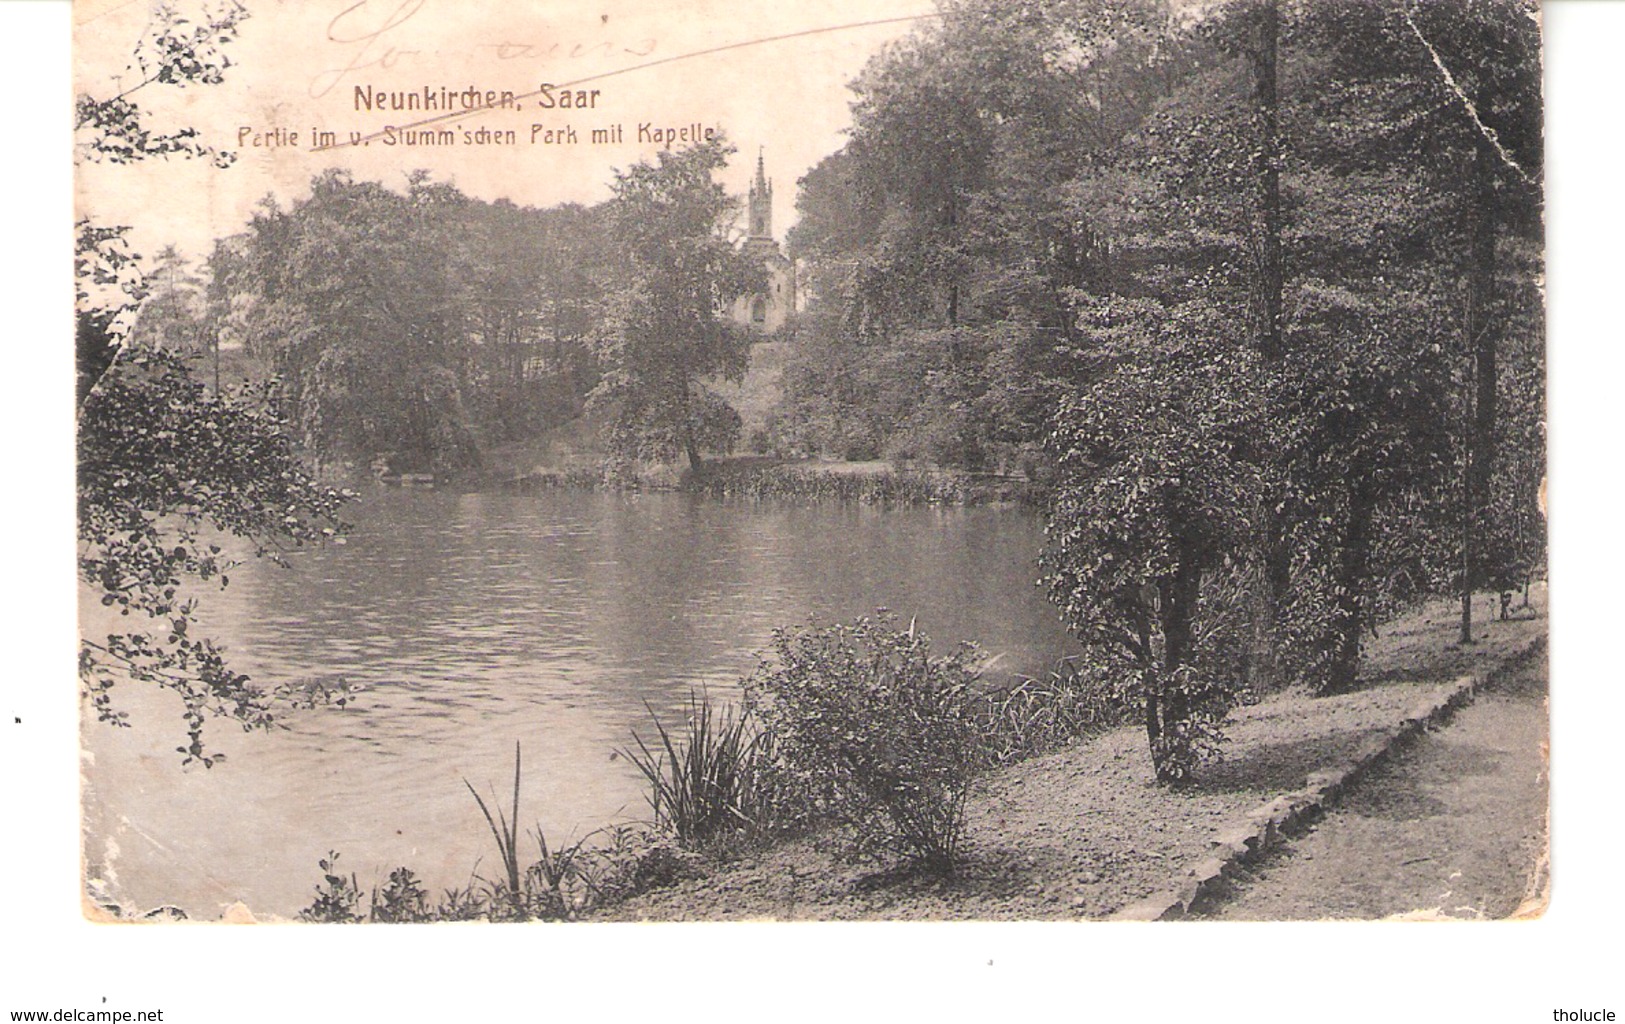 Allemagne-Neunkirchen (Saar-Sarre)-1918-Partie Im V. Stumm'schen Park Mit Kapelle - Kreis Neunkirchen